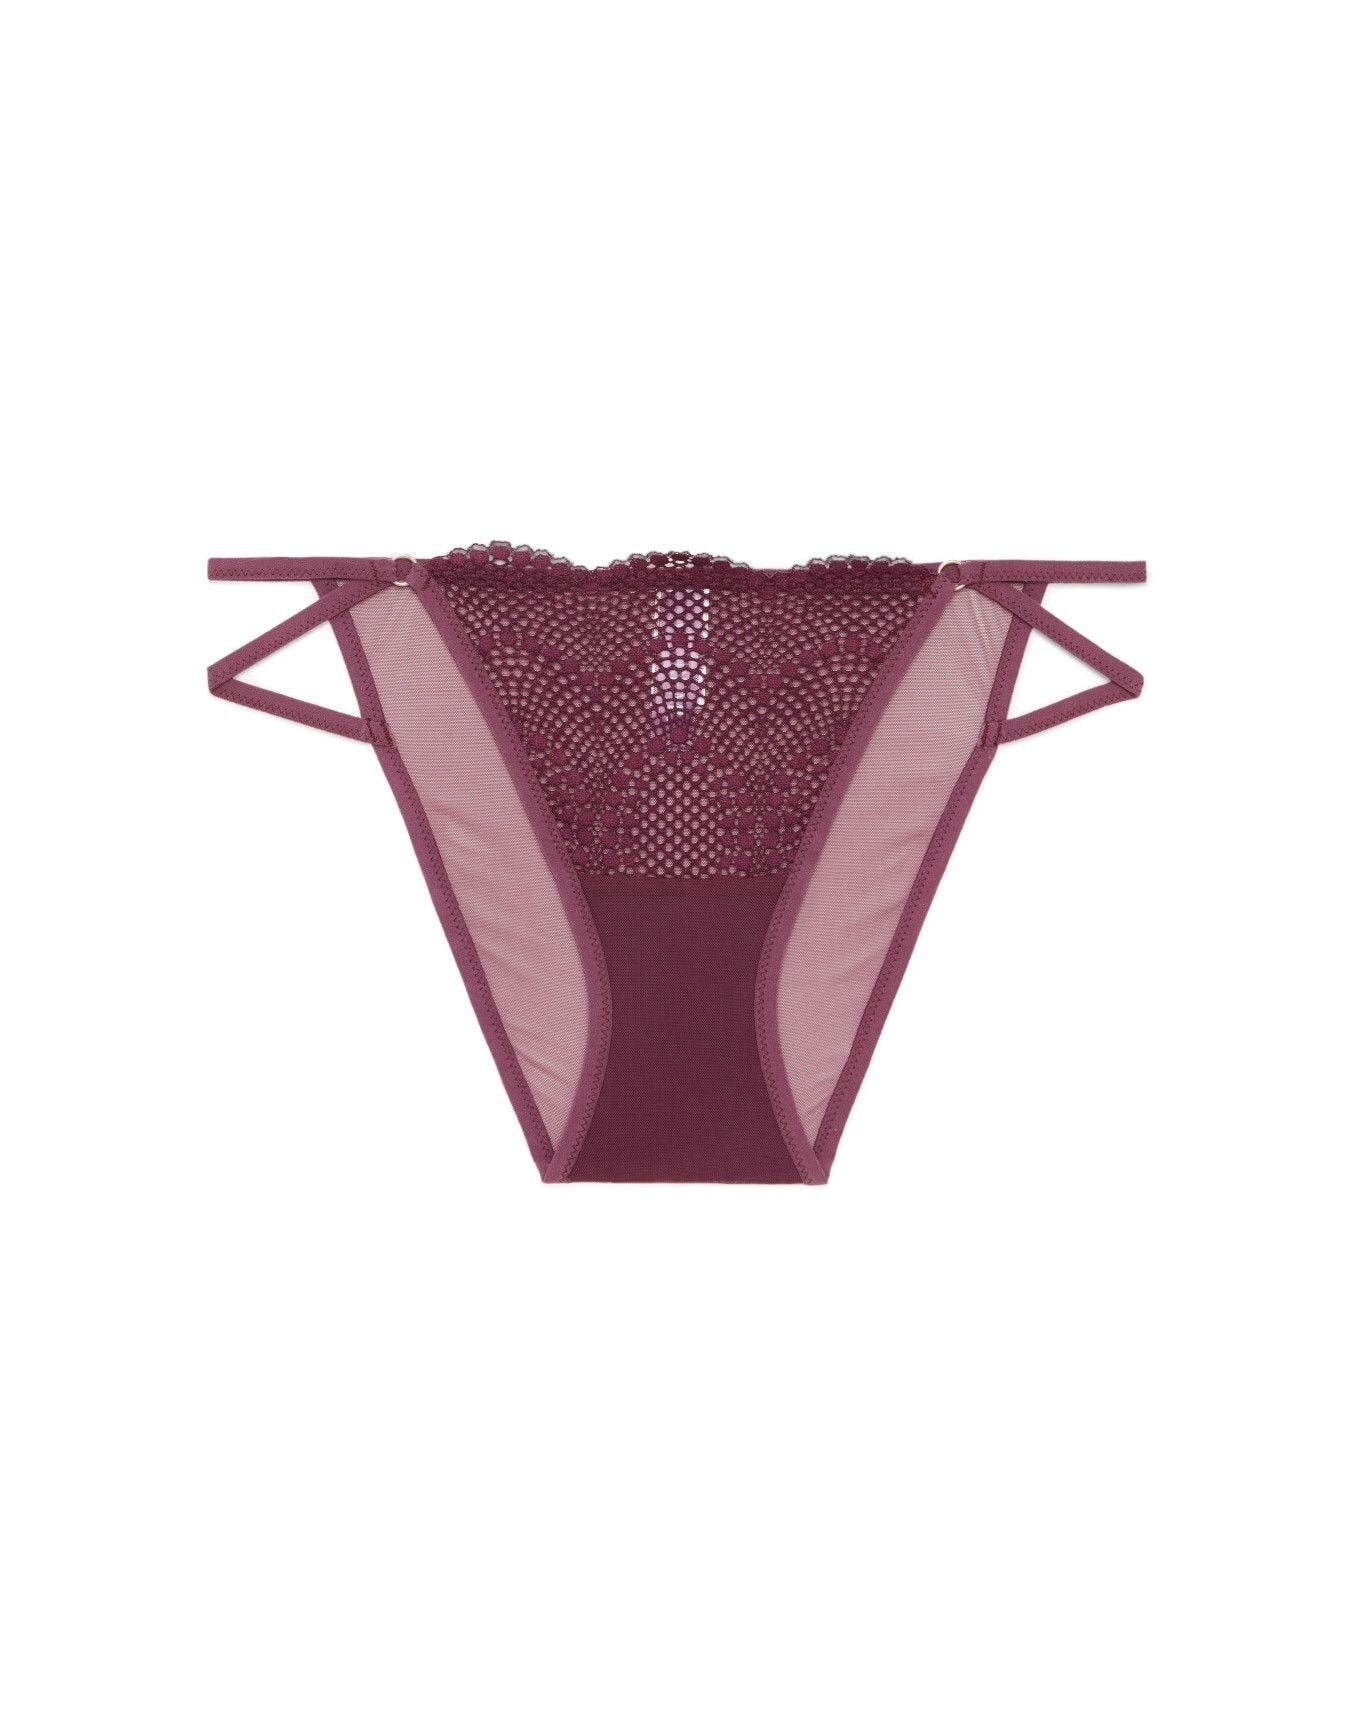 Adore Me Margaritte String Bikini in color Grape Wine and shape bikini